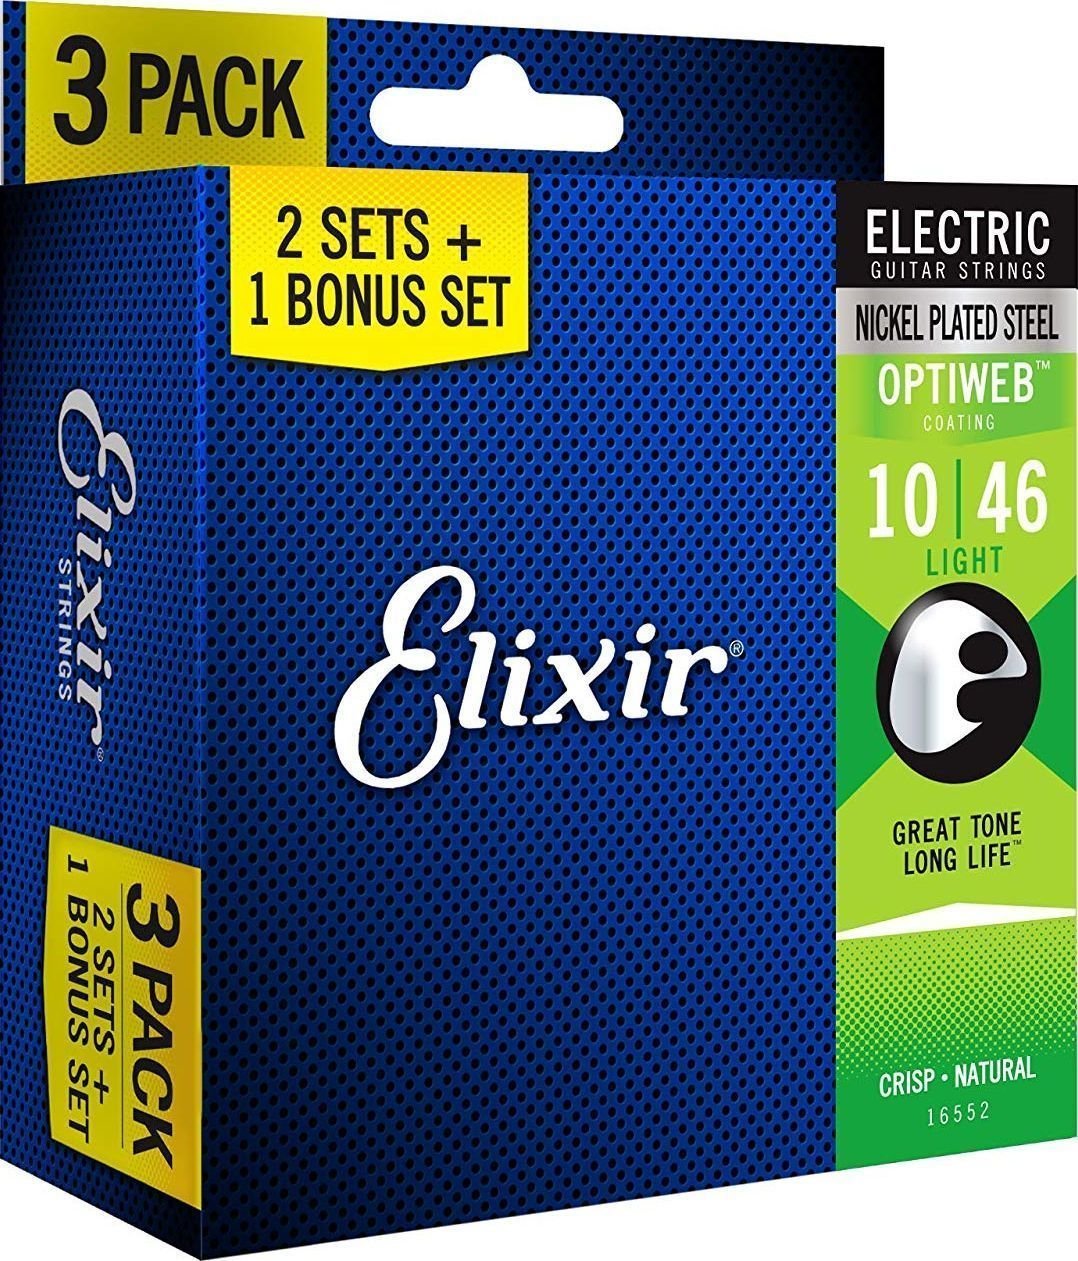 Cordes pour guitares électriques Elixir 16552 OPTIWEB Coating Light 10-46 3-PACK